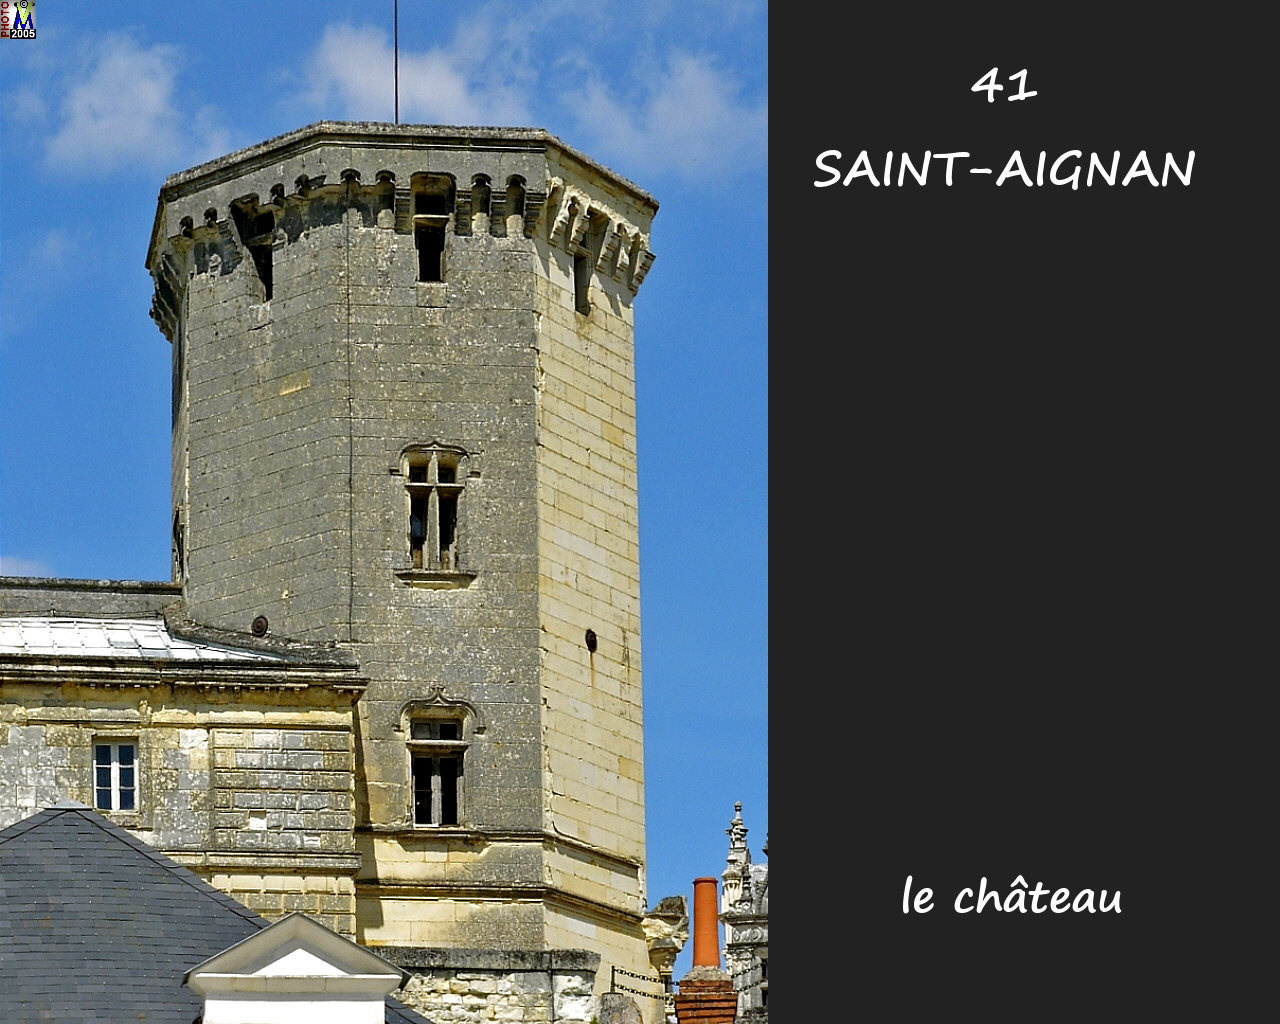 41STAIGNAN_chateau_506.jpg